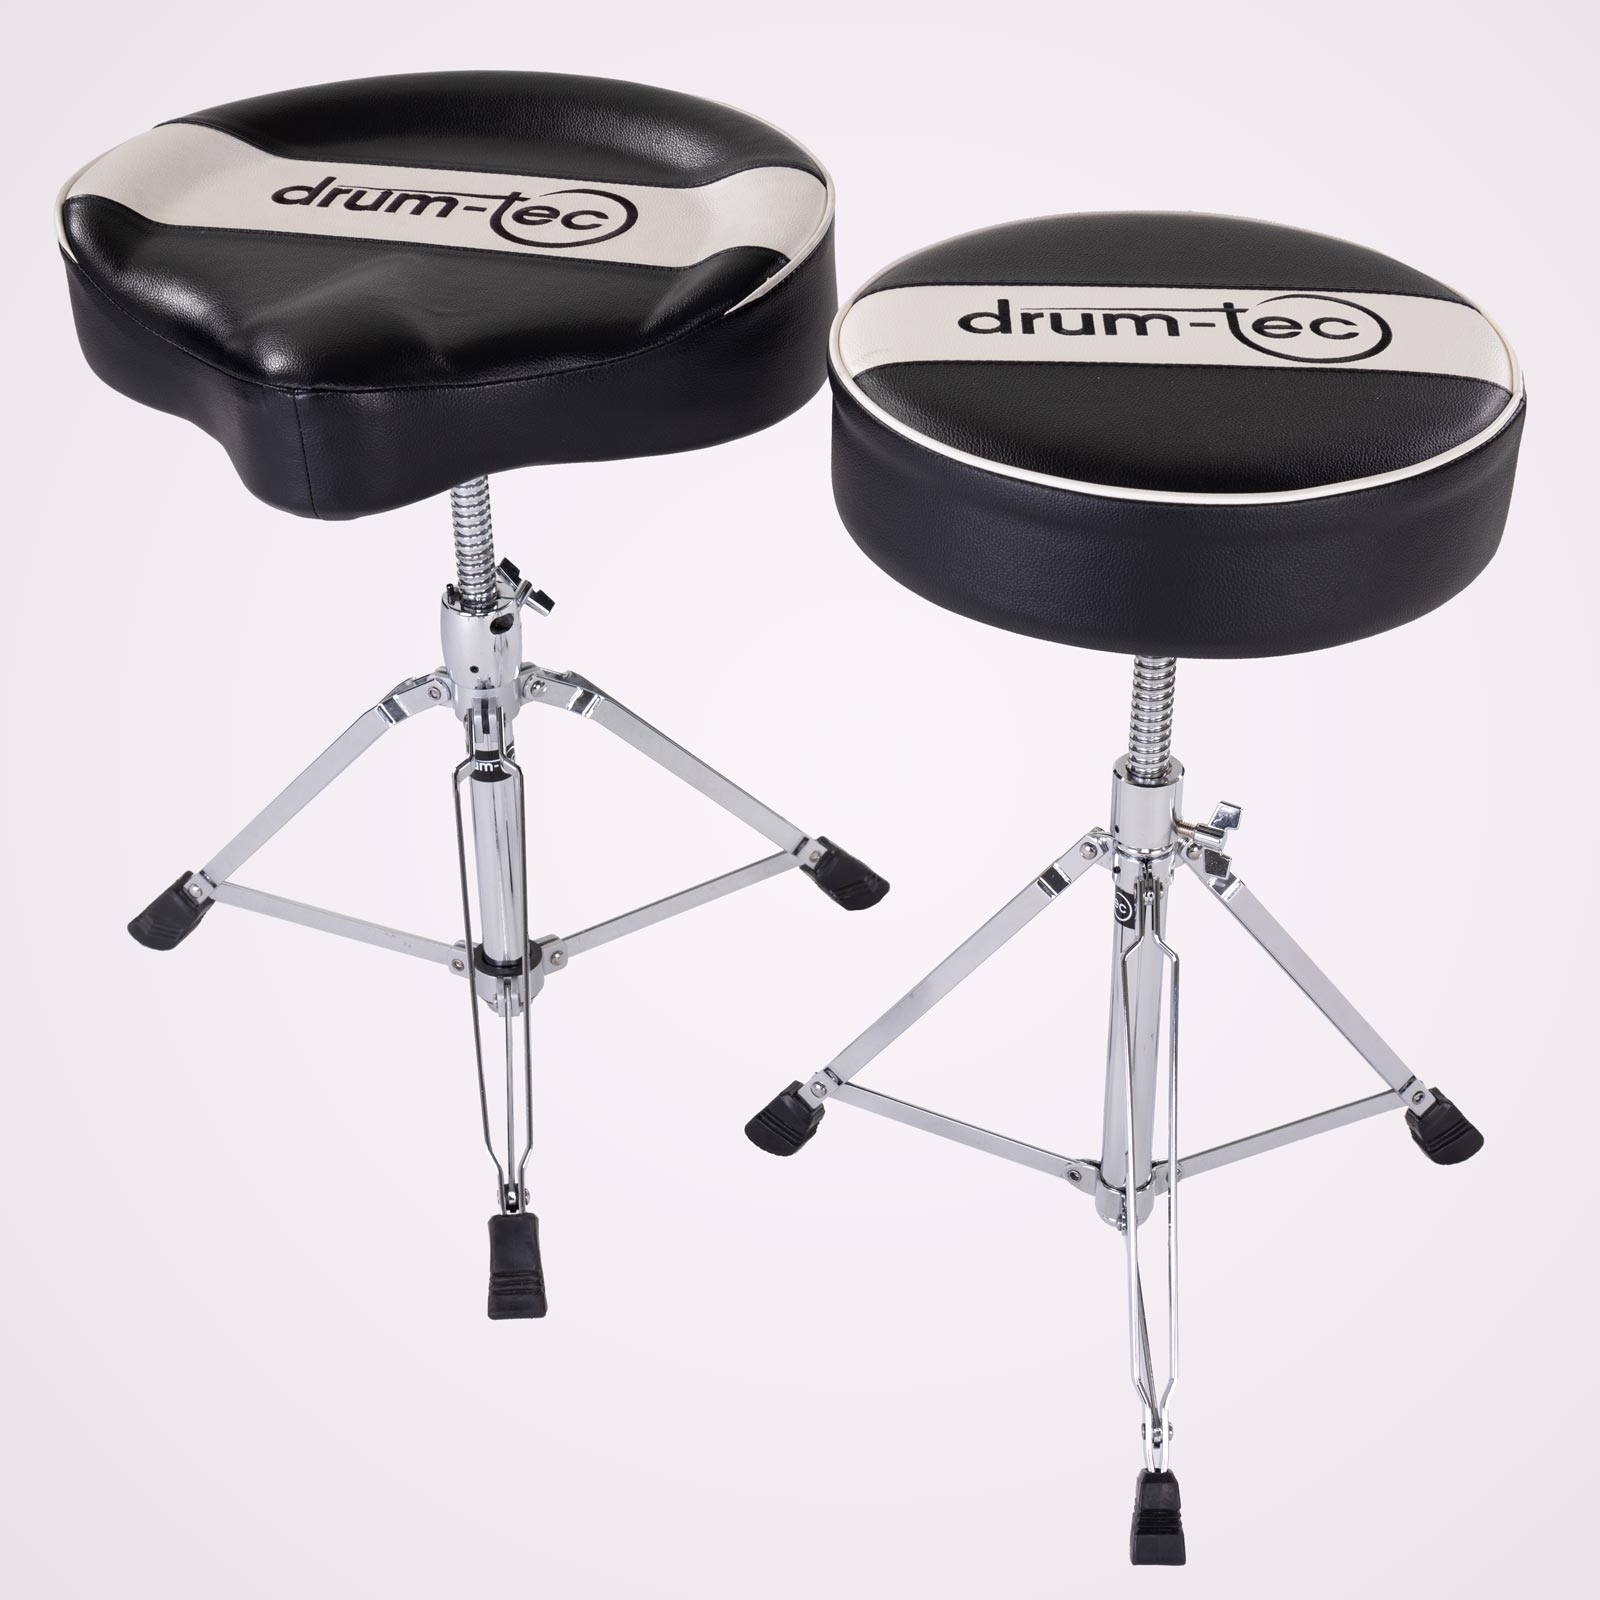 Super komfortabler und flexibler Schlagzeughocker ideal auch für kleine Drummer 